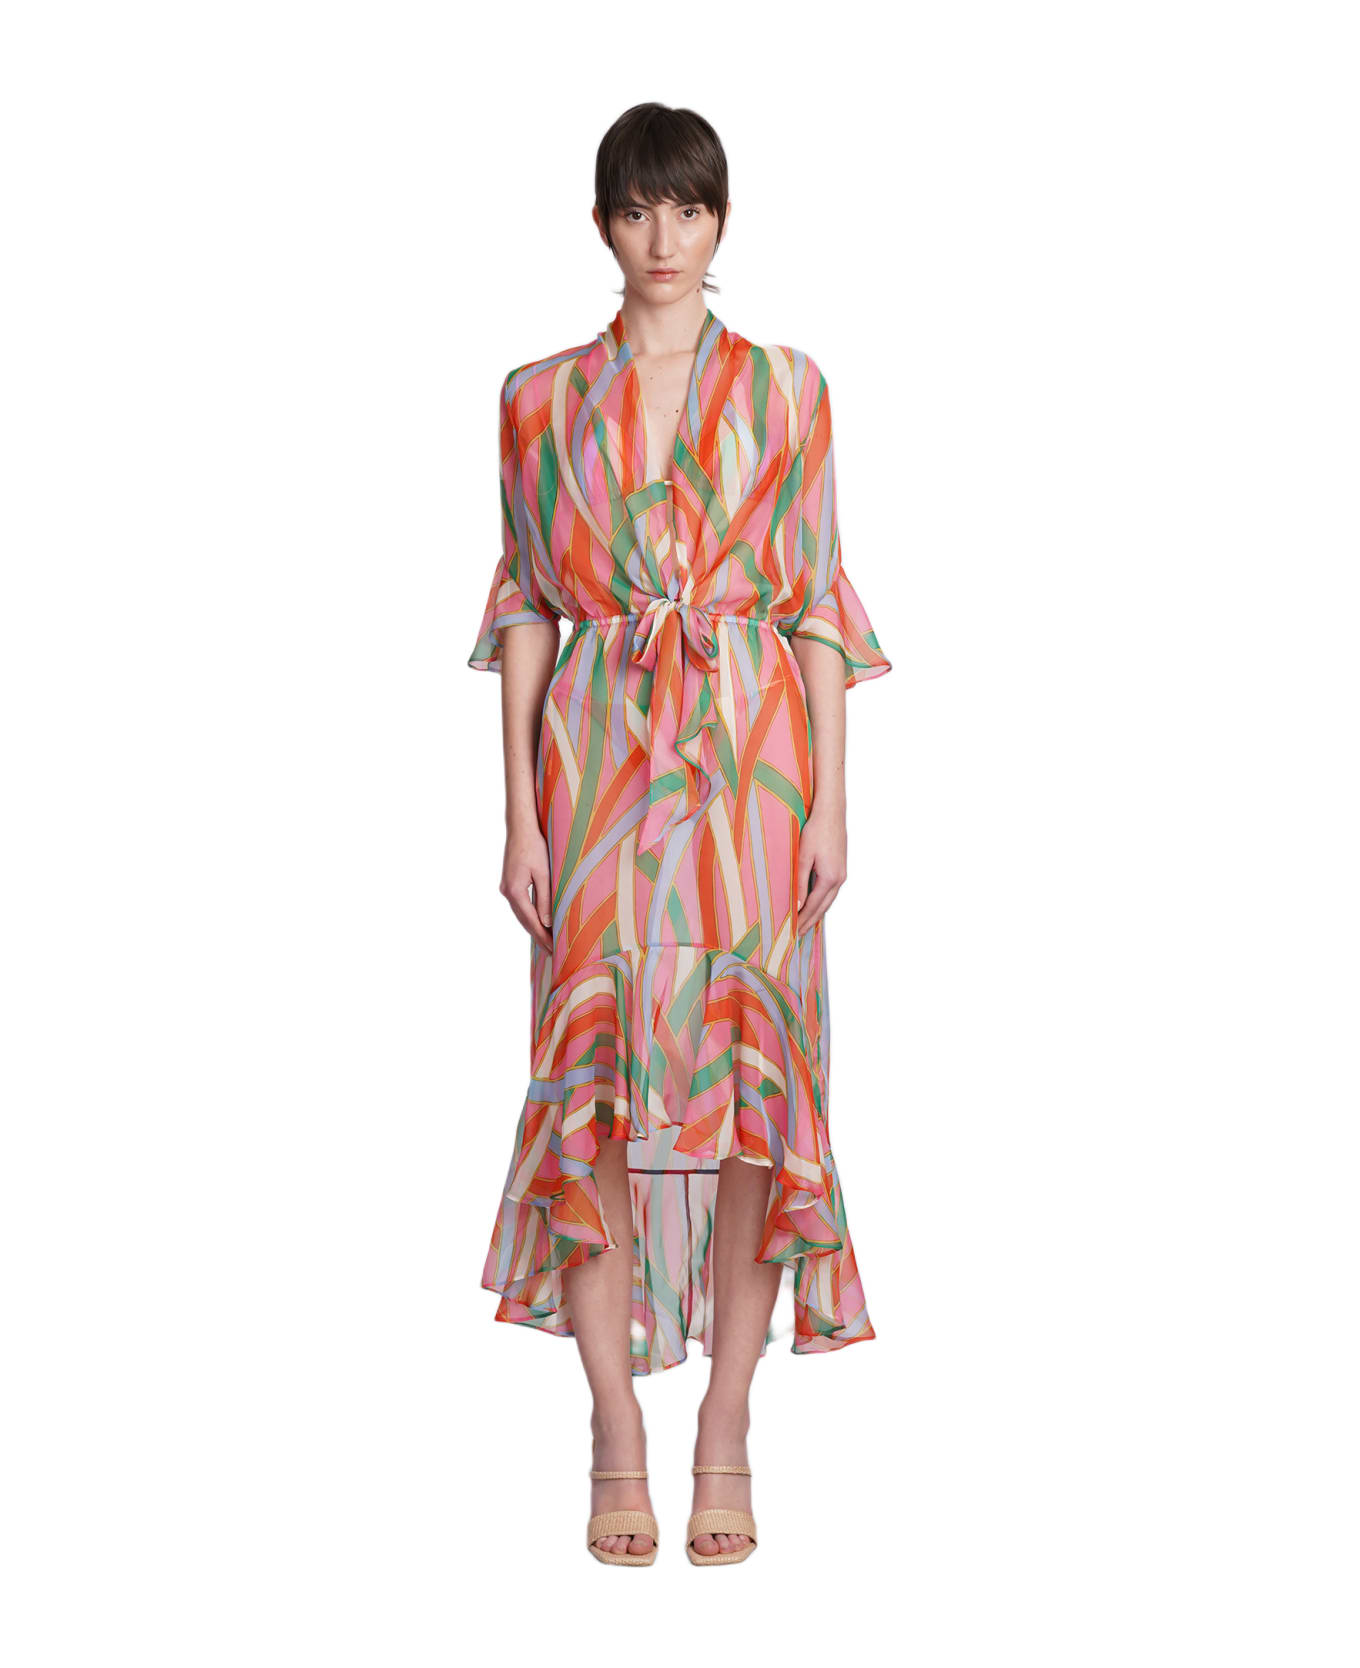 Cult Gaia Delira Dress In Multicolor Polyester - multicolor